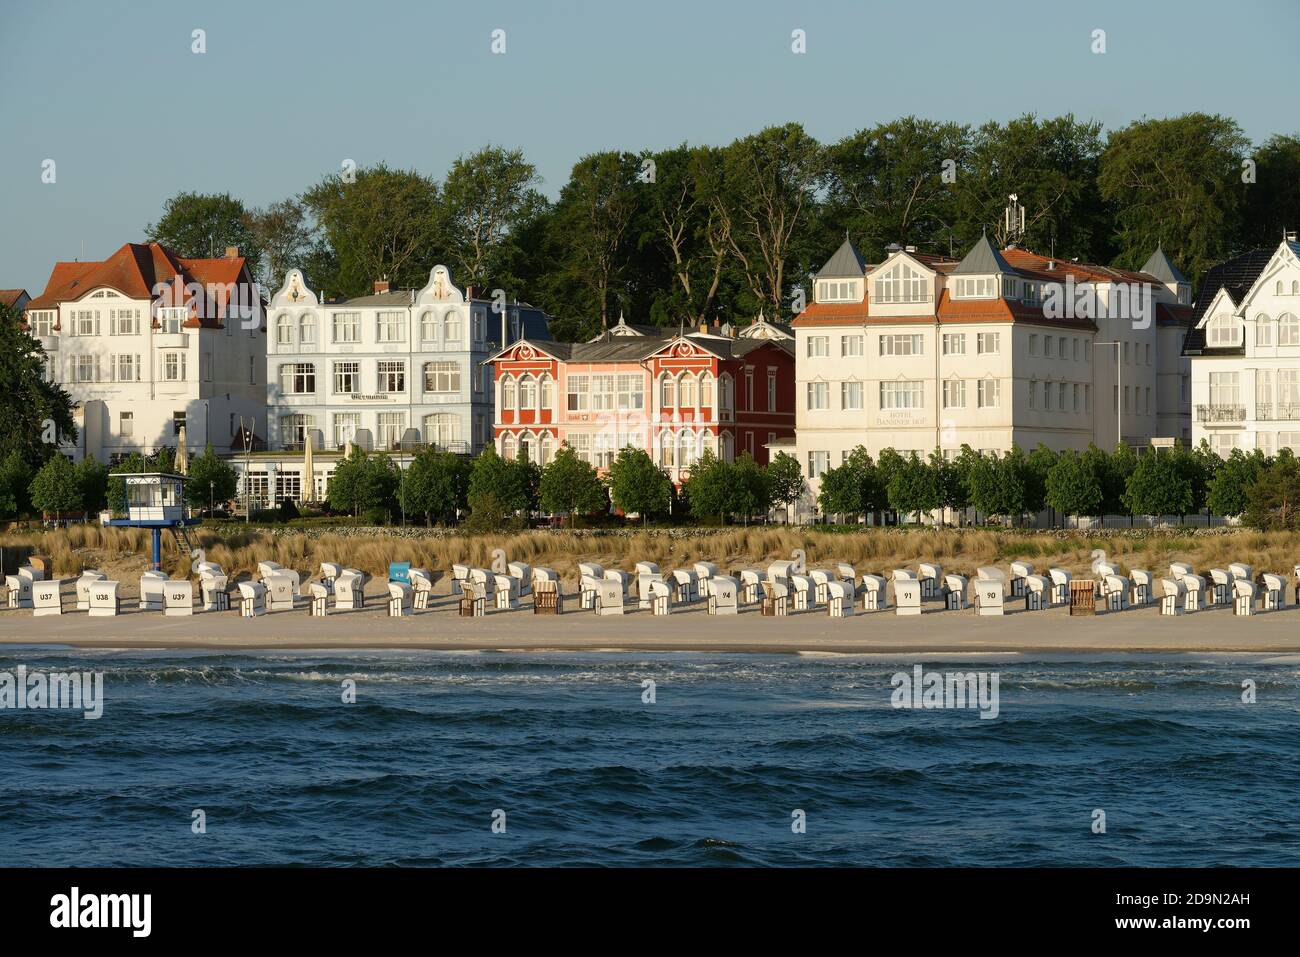 Villen mit Meerblick an der Strandpromenade von Bansin im Morgenlicht, Badeort Bansin, Usedom, Ostsee, Mecklenburg-Vorpommern, Deutschland Stockfoto